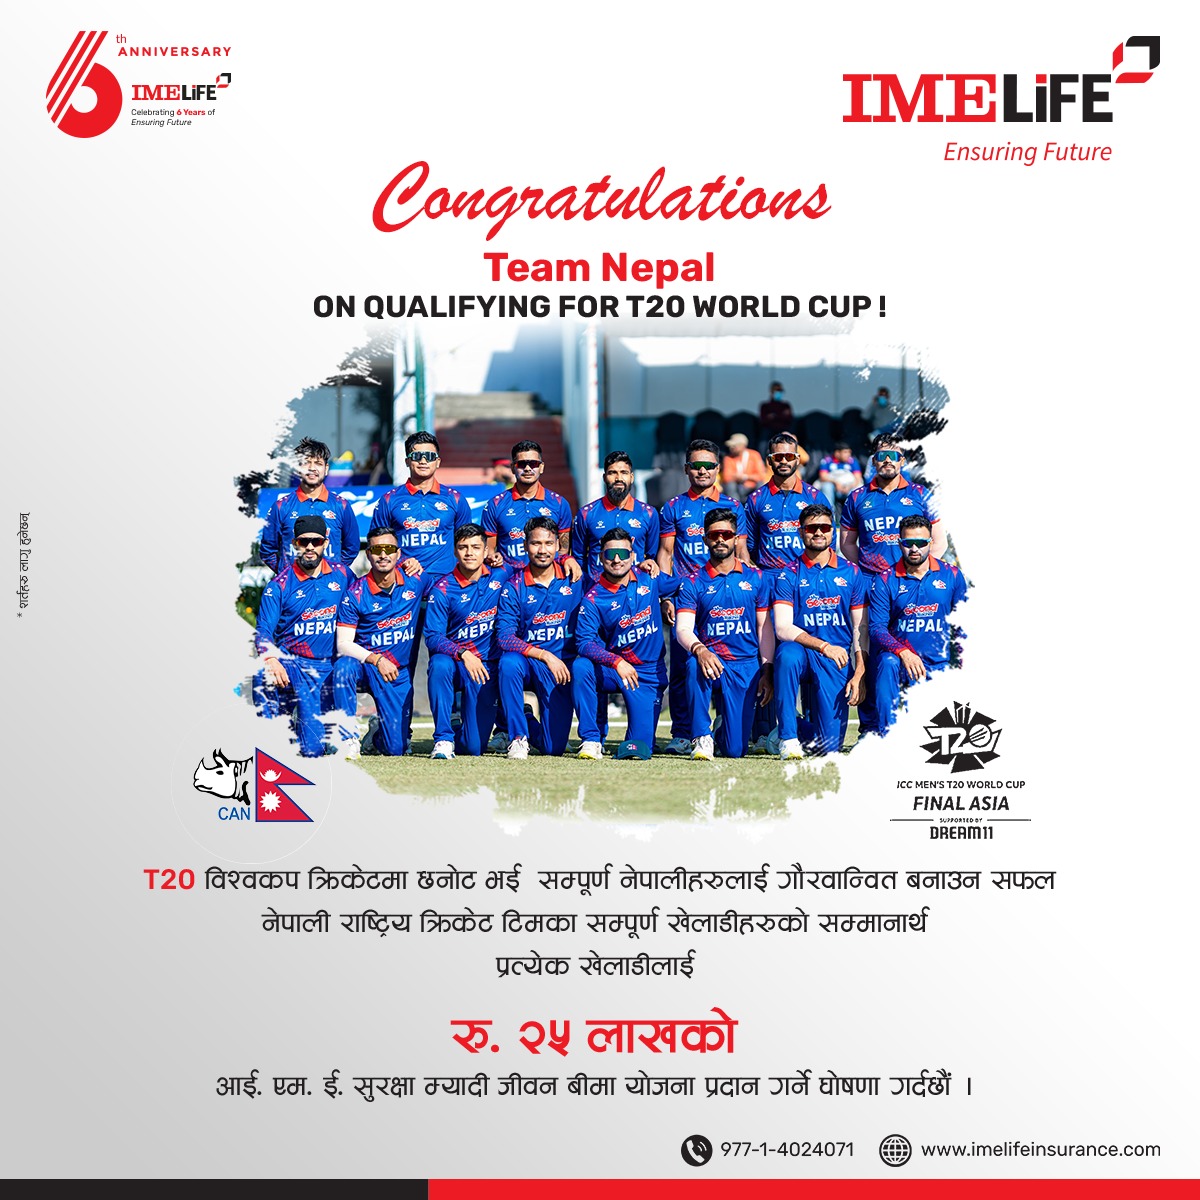 आई.एम.ई. लाइफ इन्स्योरेन्स कम्पनीद्वारा नेपाली क्रिकेटका खेलाडीहरूलाई बिमाड्ढ रु. २५ लाख बराबरकोे म्यादी जीवन बीमा प्रदान गर्ने